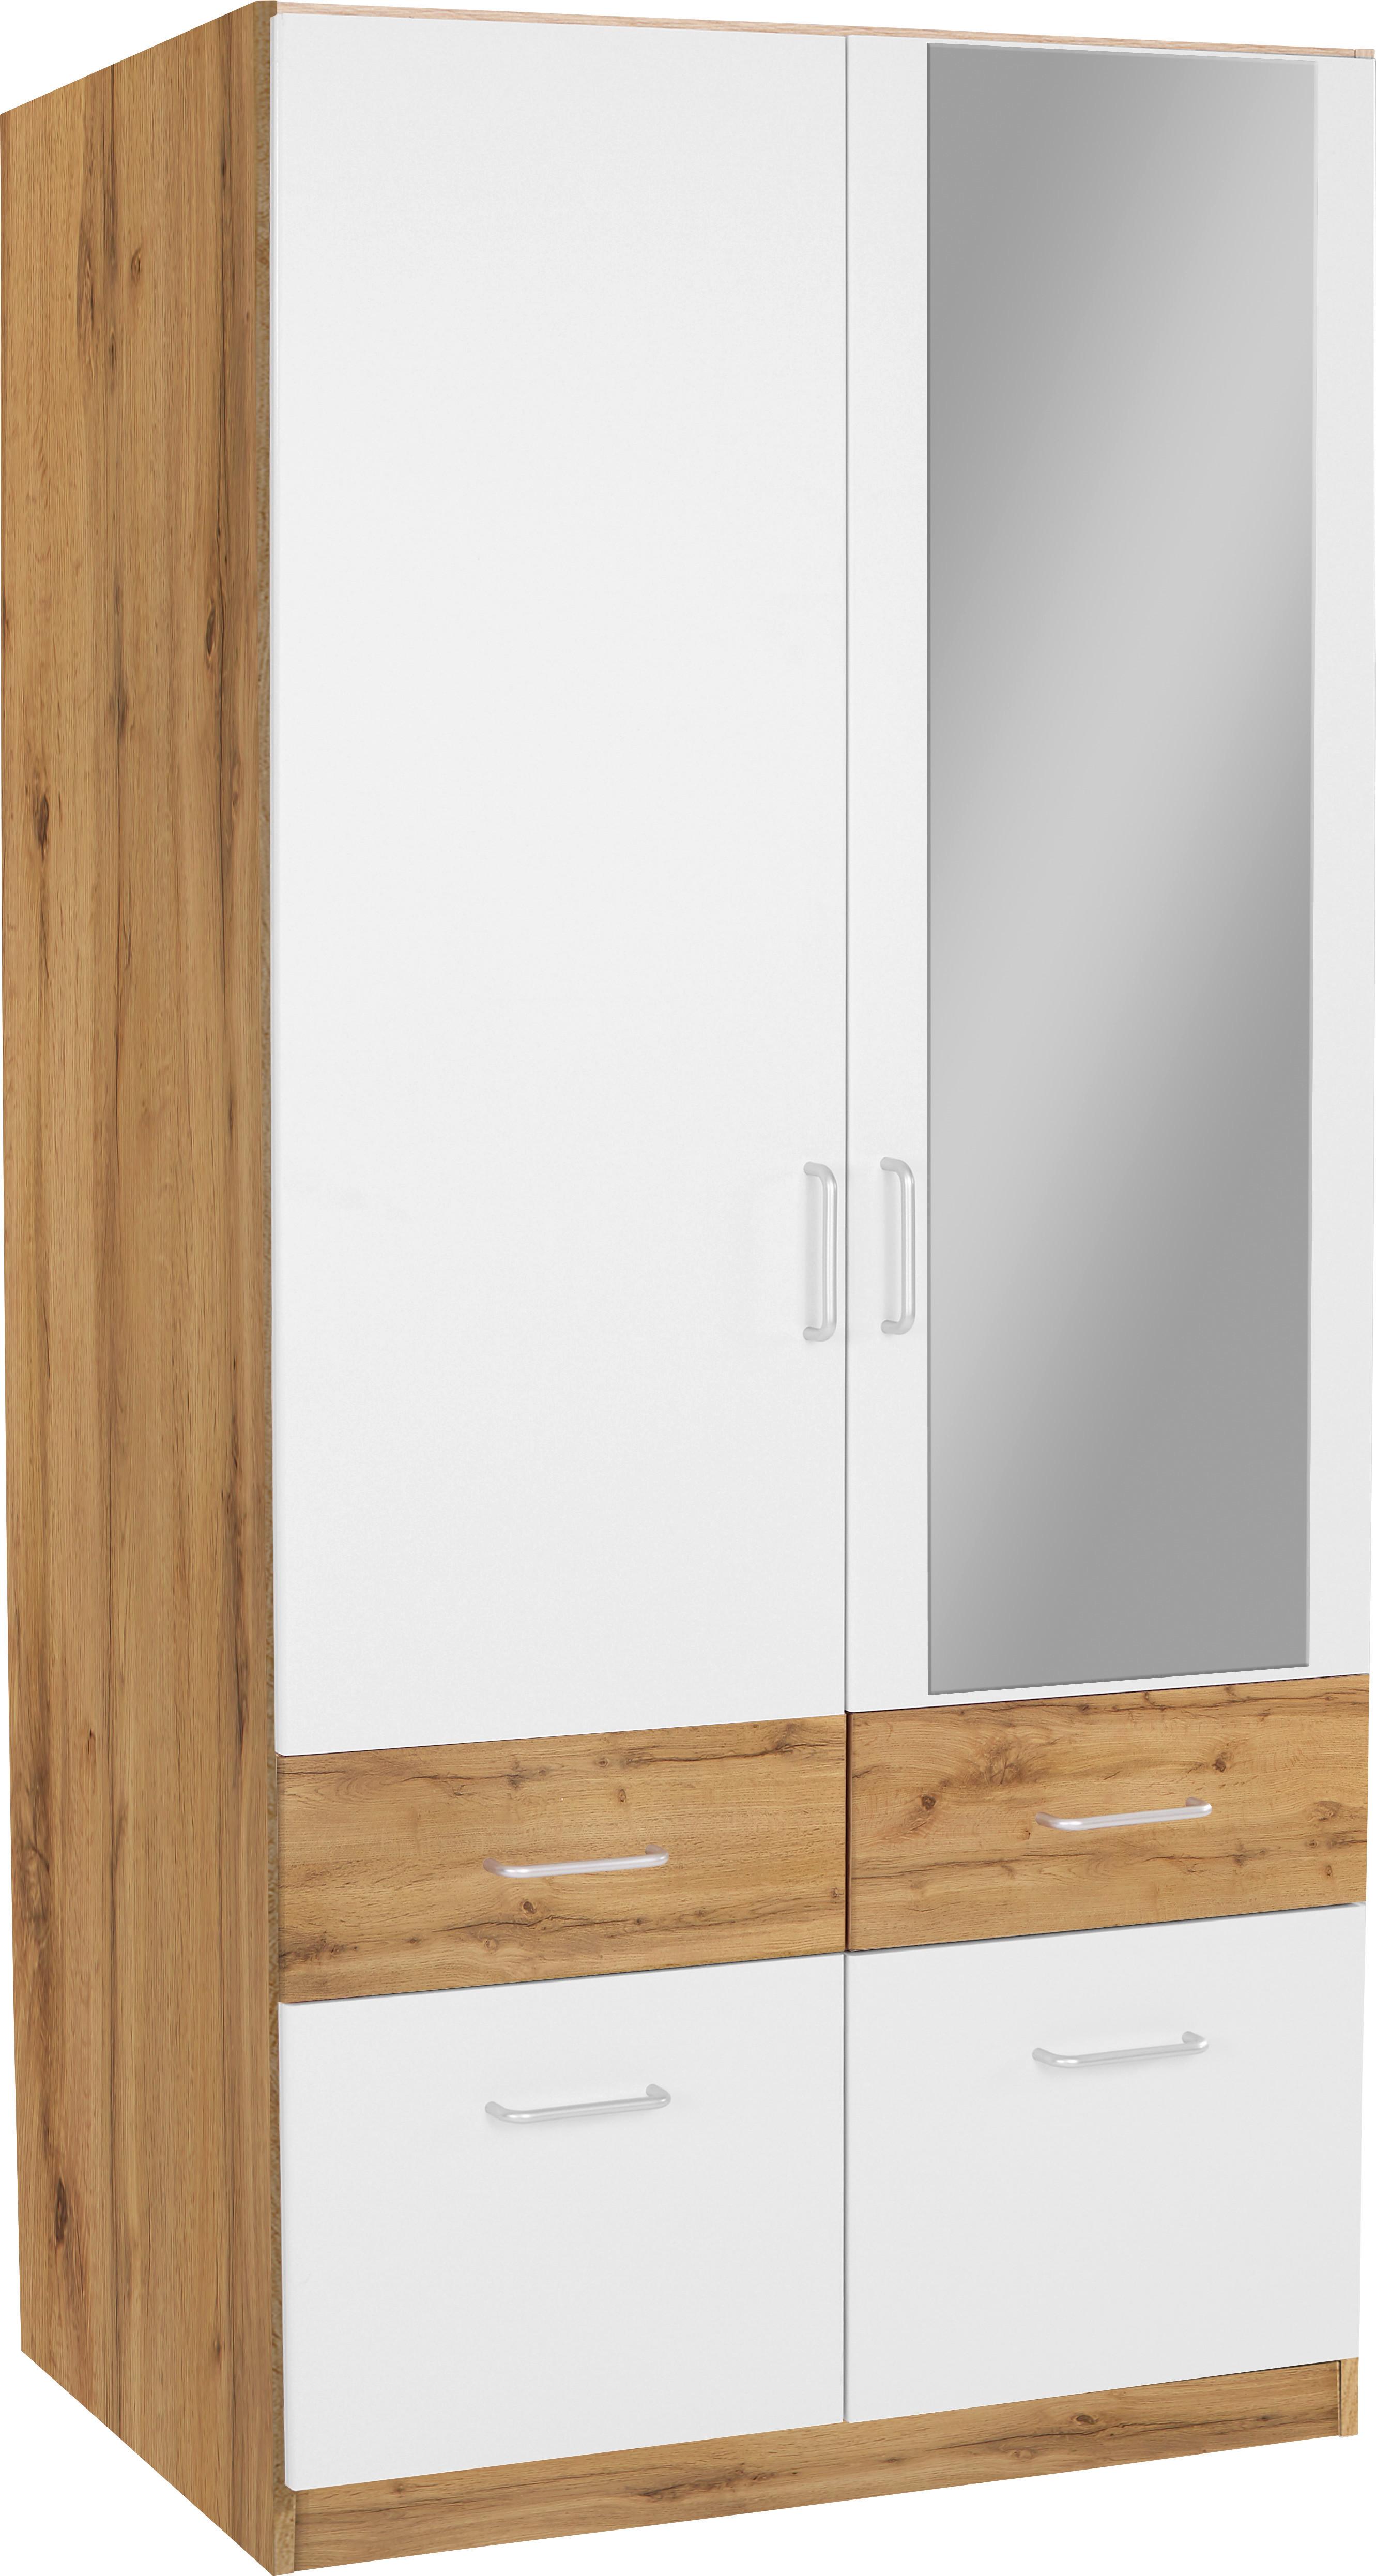 Dulap de haine Aalen Extra - alb/culoare lemn stejar, Konventionell, material pe bază de lemn (91/197/54cm)